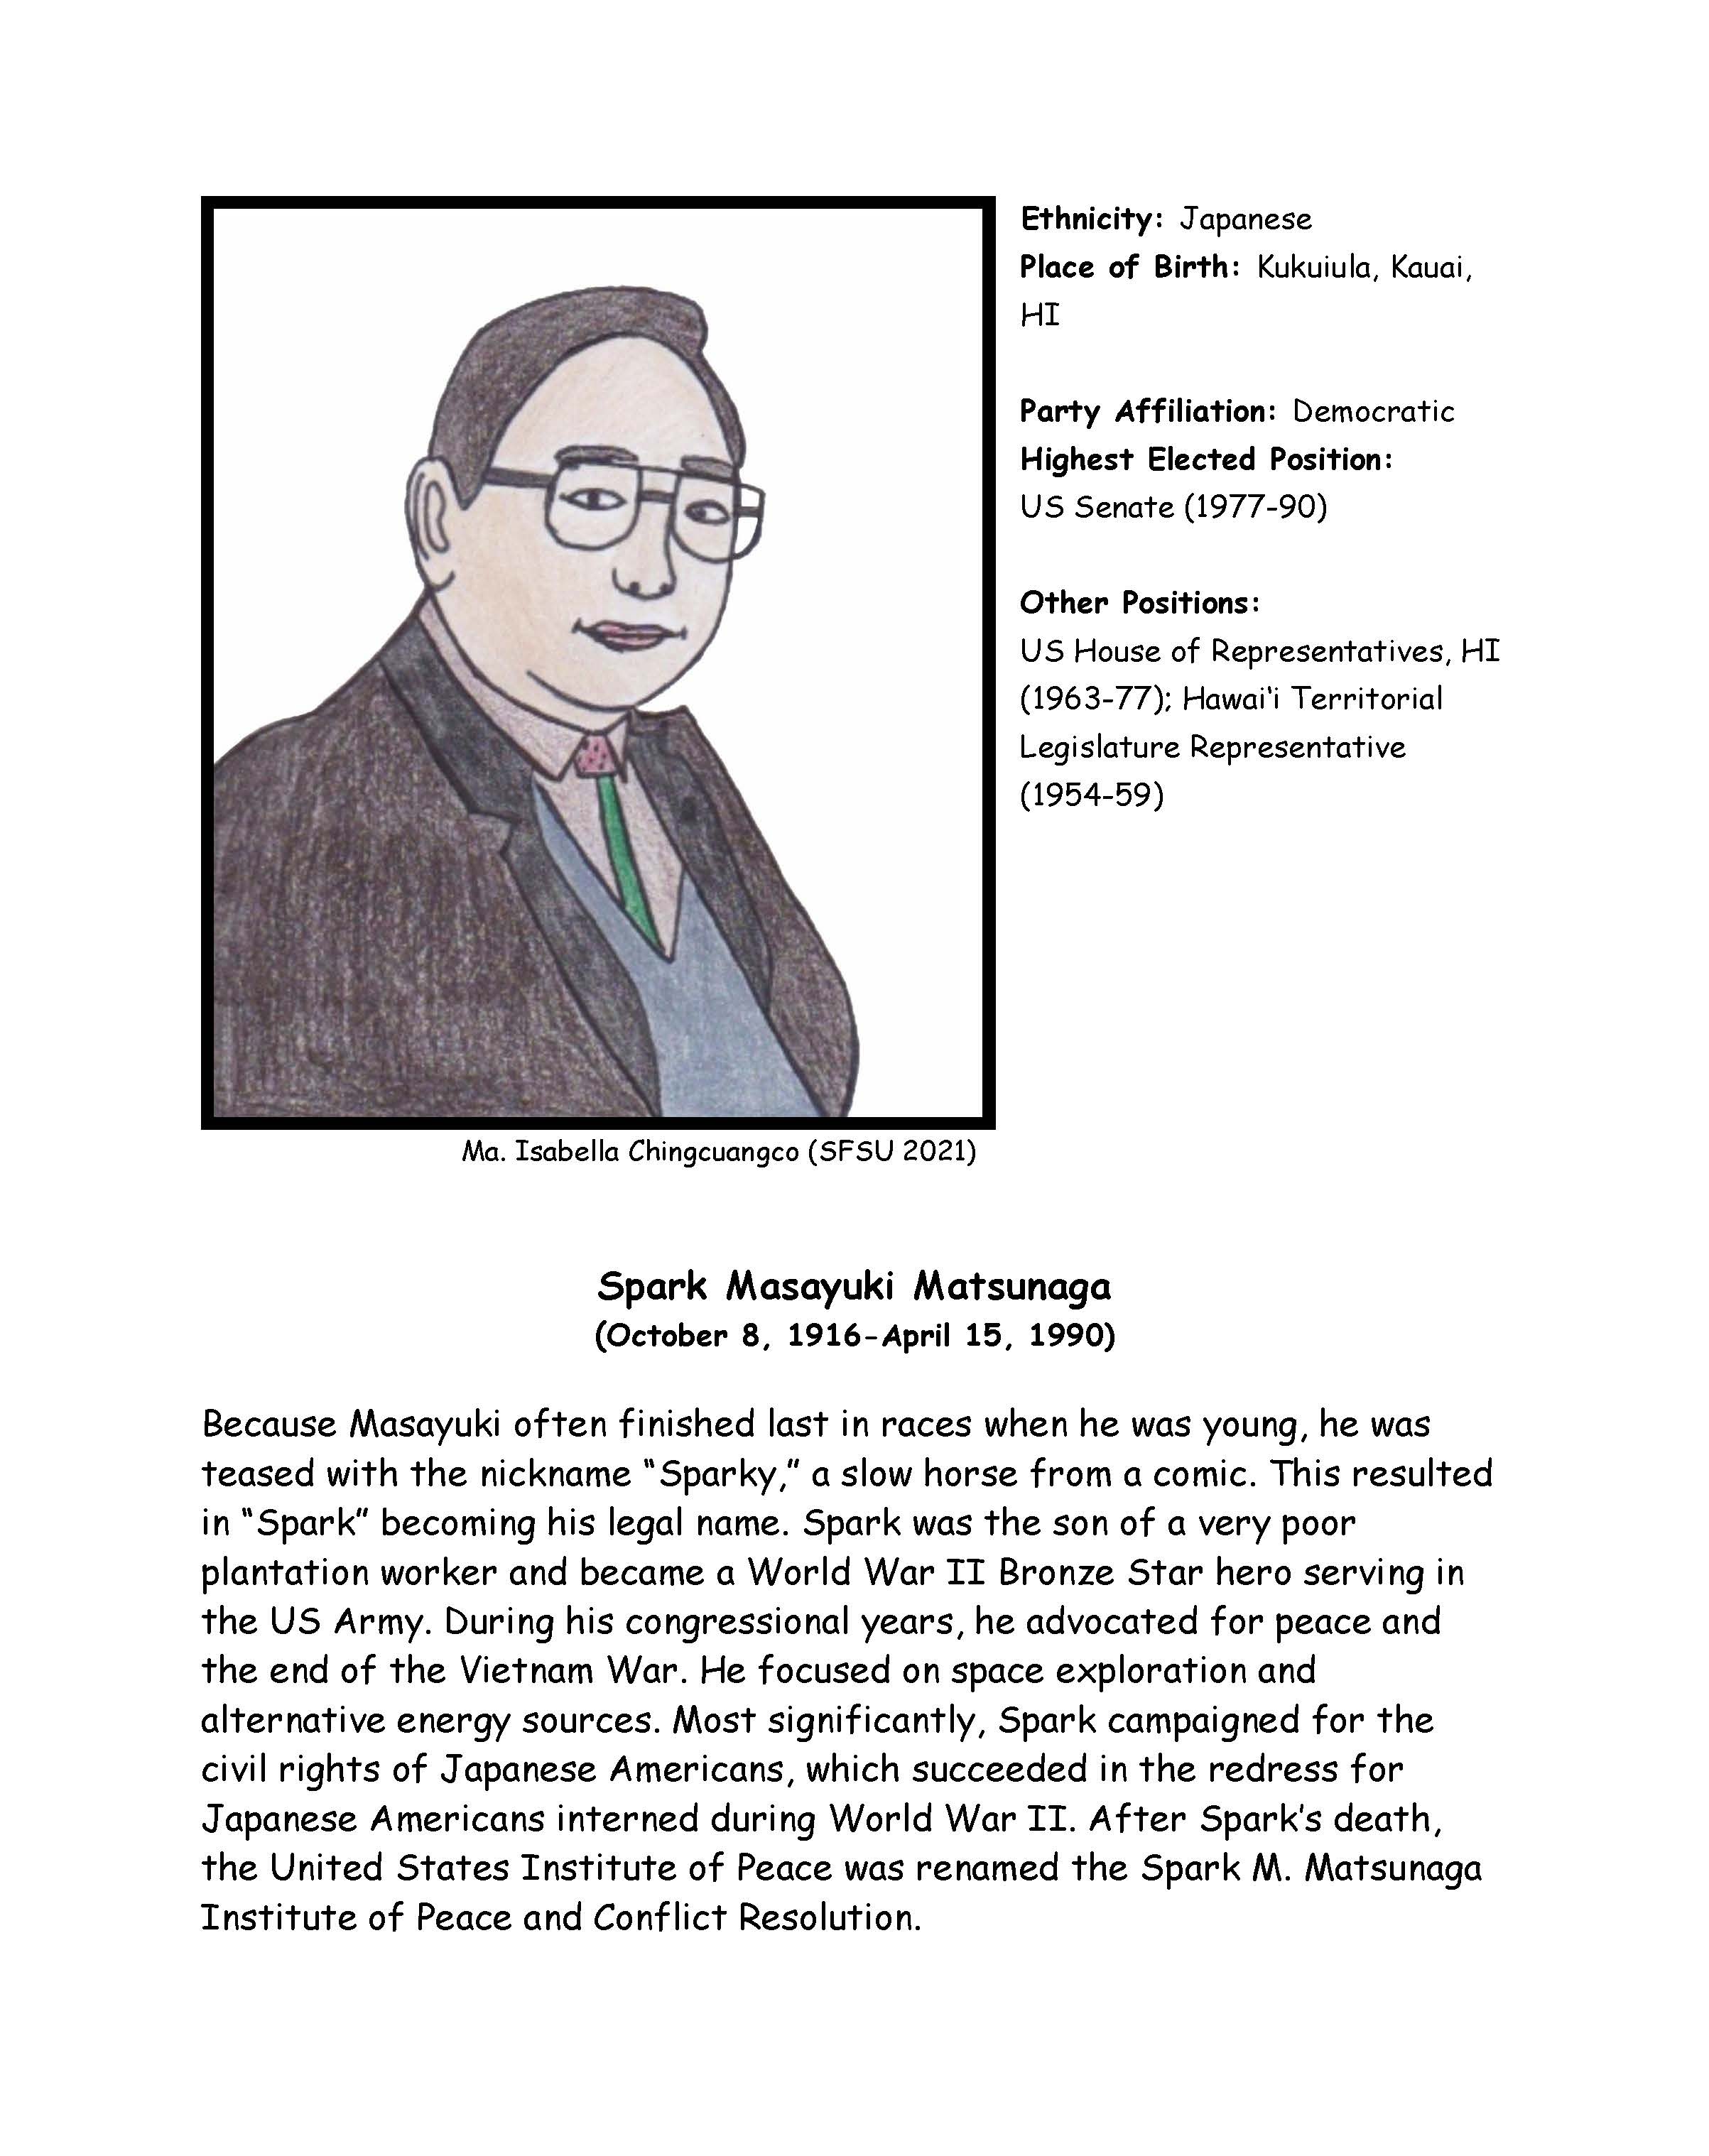 Spark Matsunaga Biography